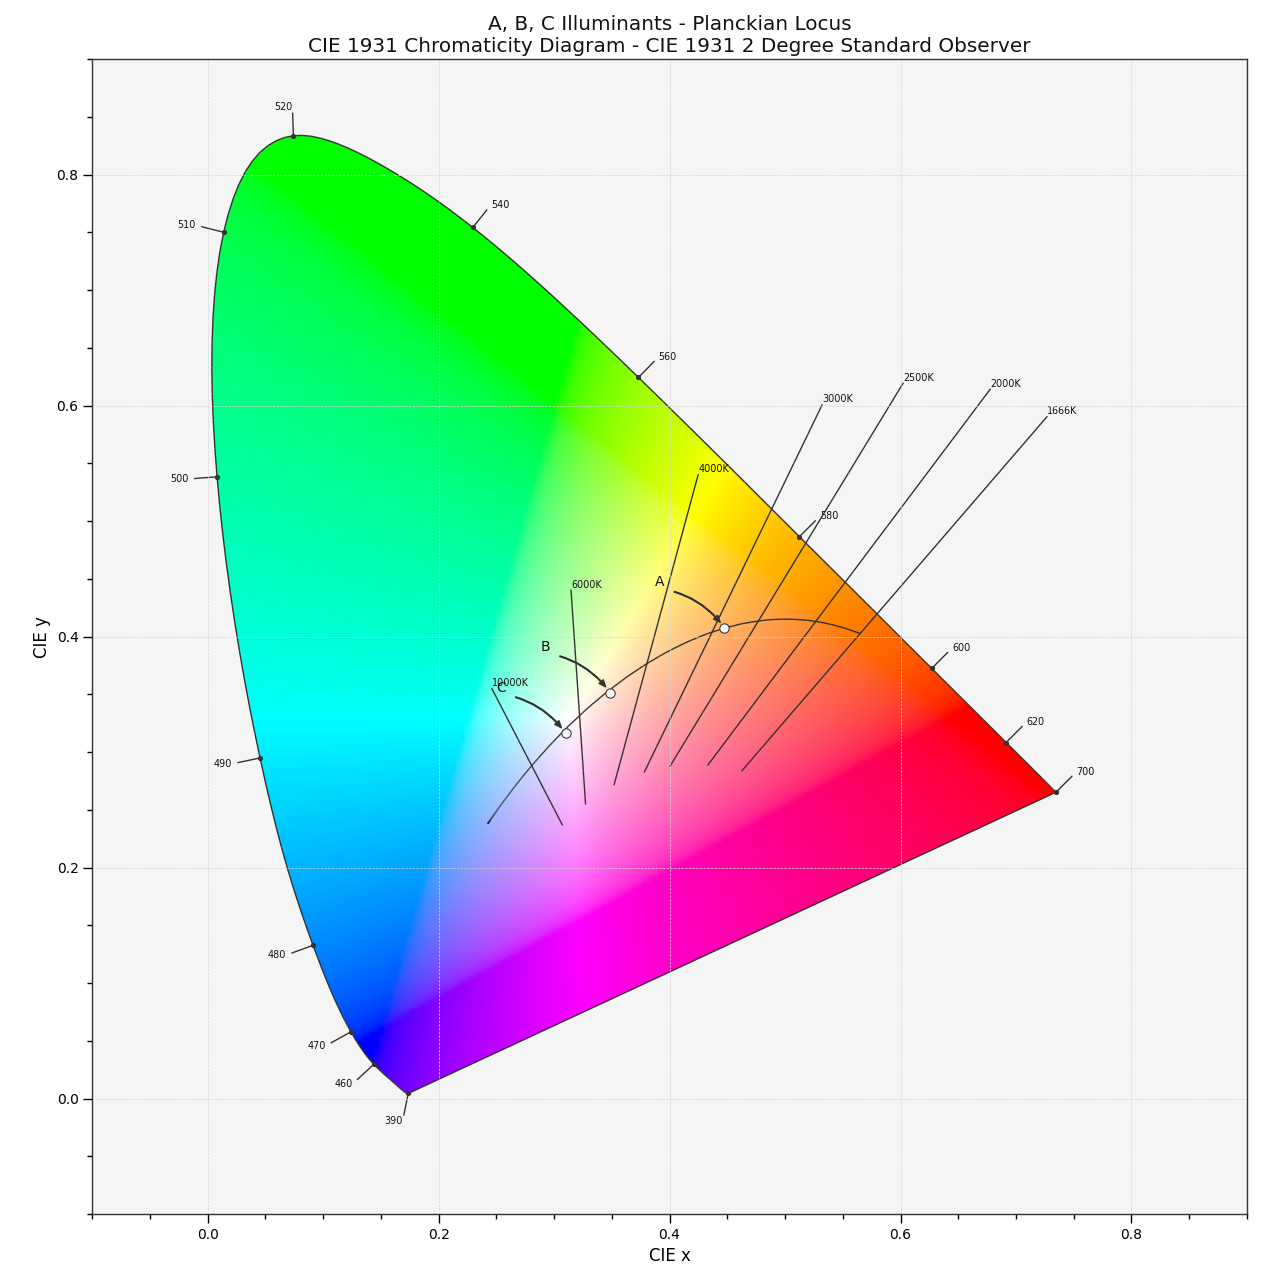 plot_planckian_locus_in_chromaticity_diagram_CIE1931